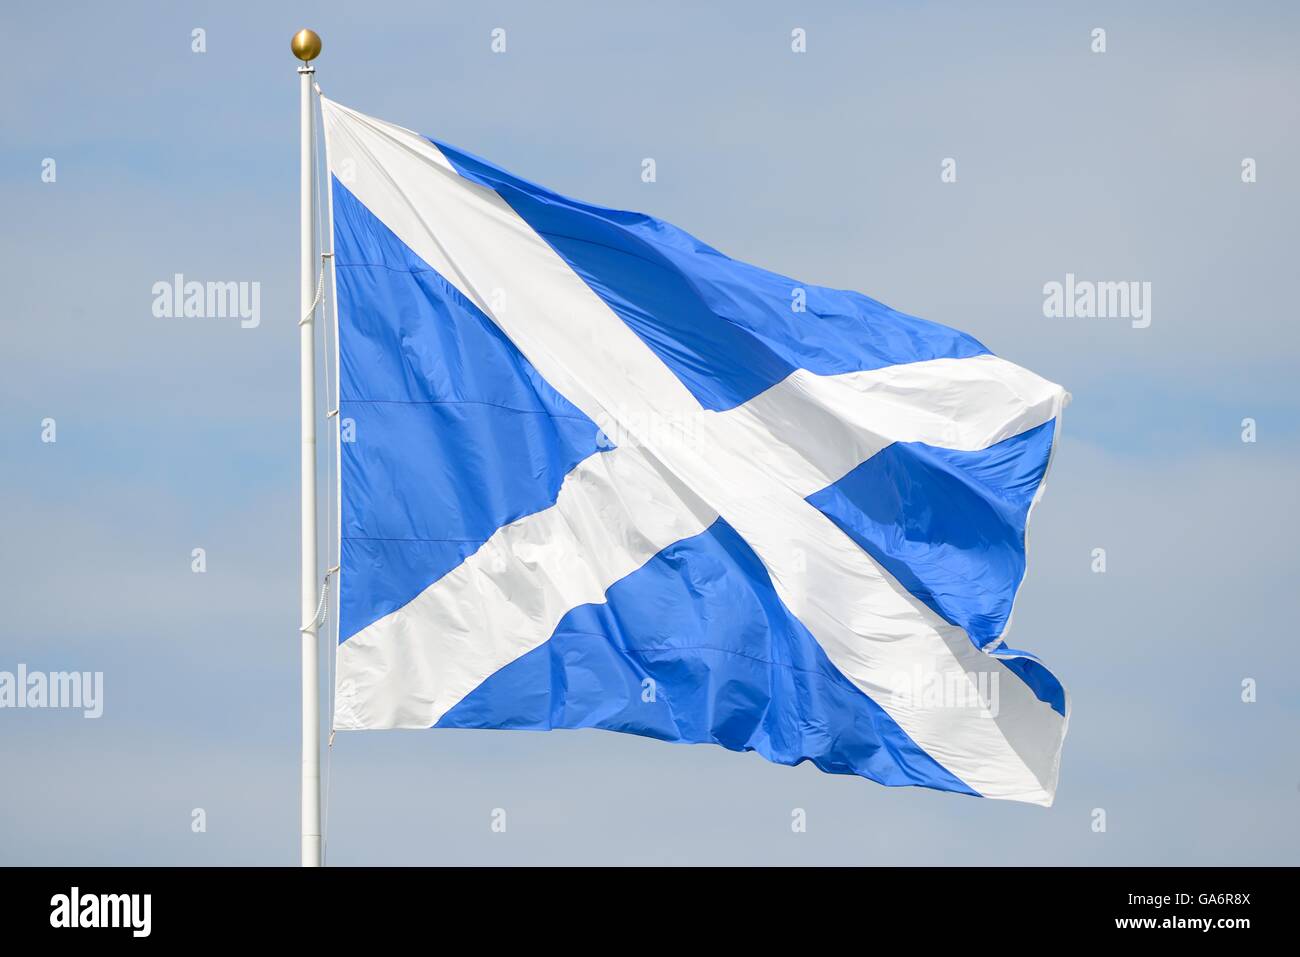 Bandiera scozzese, St Andrew's Cross, che soffia con il vento. Foto Stock